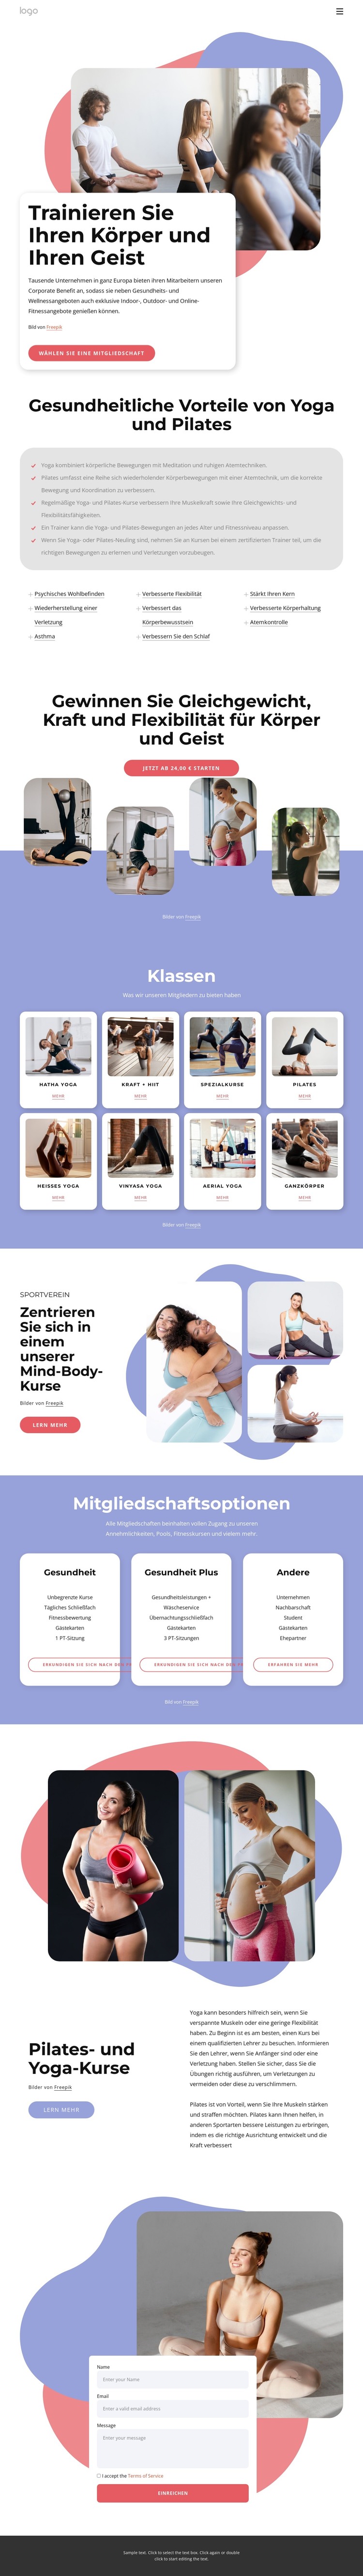 Pilates- und Yoga-Kurse HTML-Vorlage